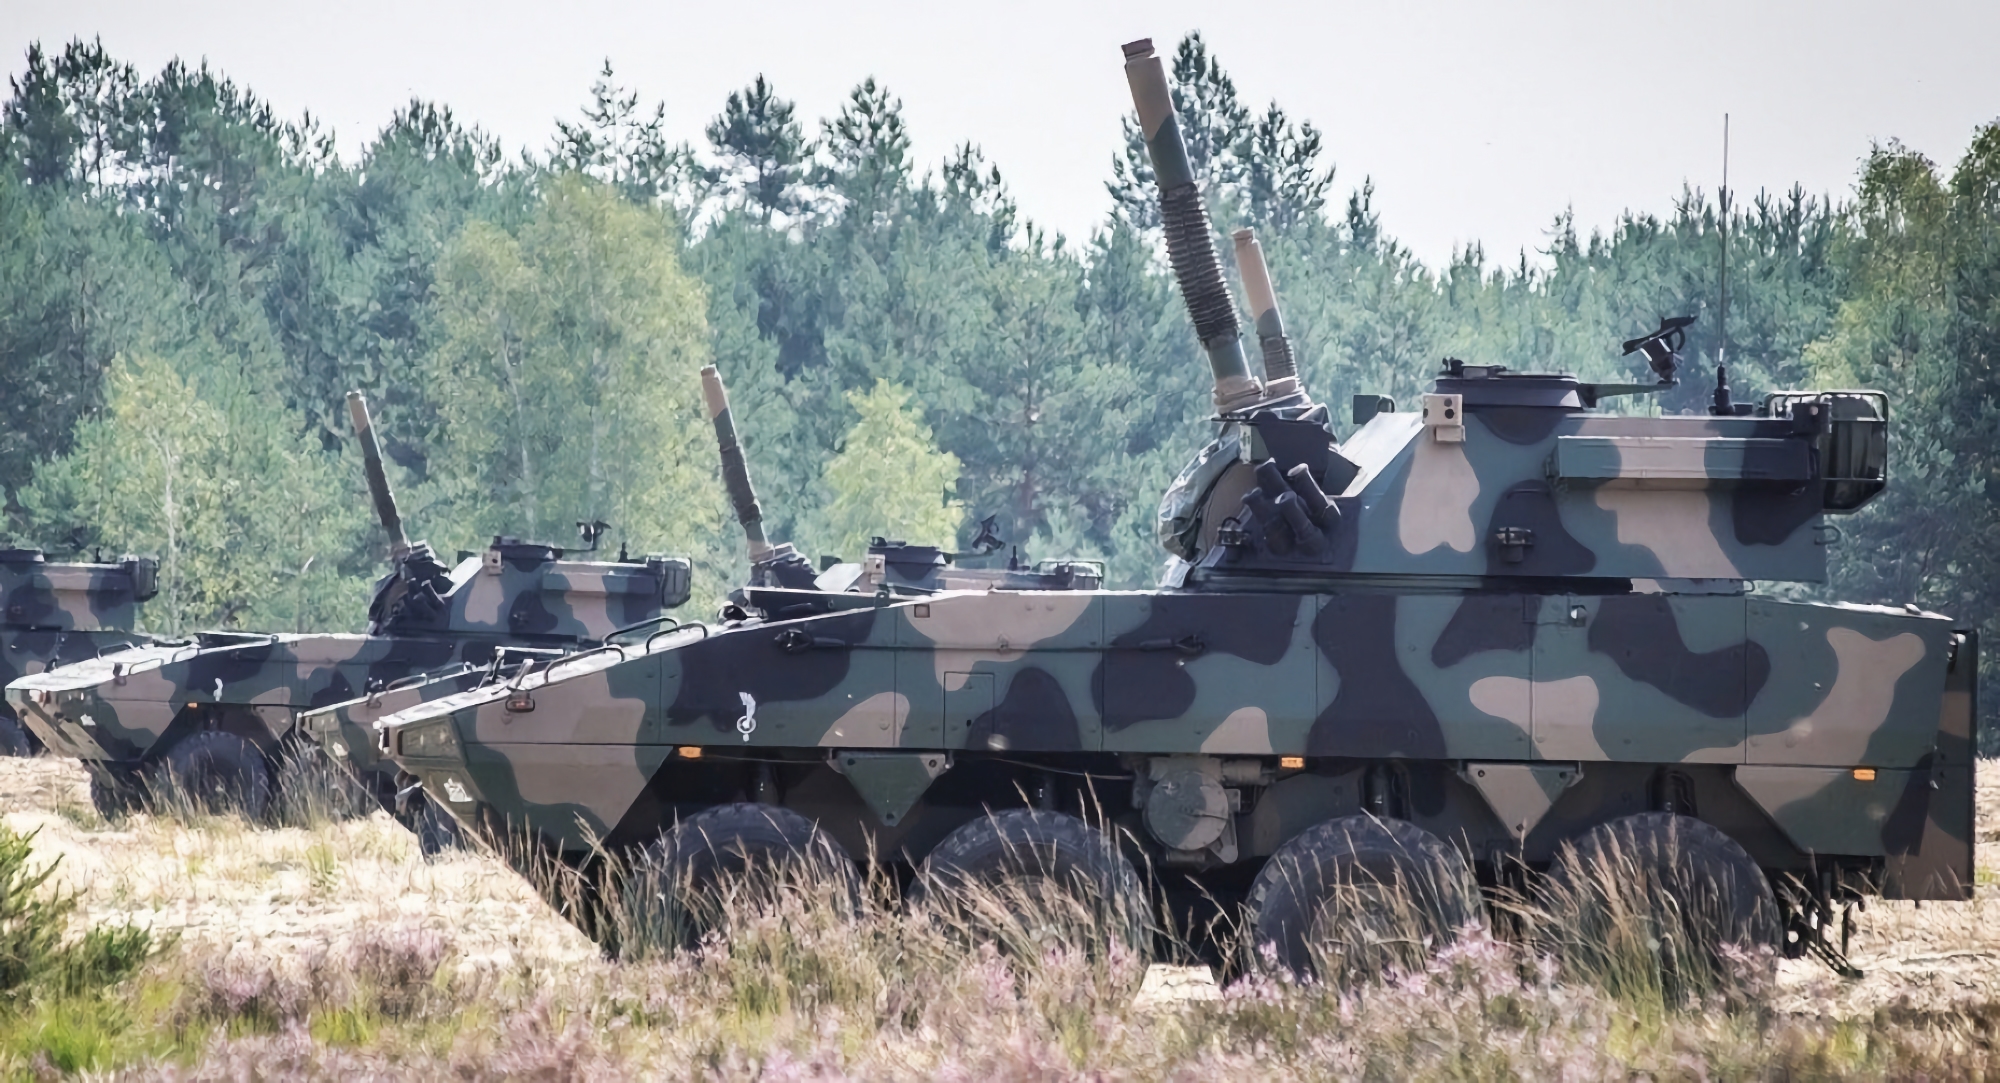 L'armée polonaise a reçu un nouveau lot de mortiers automoteurs Rak de 120 mm, dont la portée d'engagement peut atteindre 12 km.